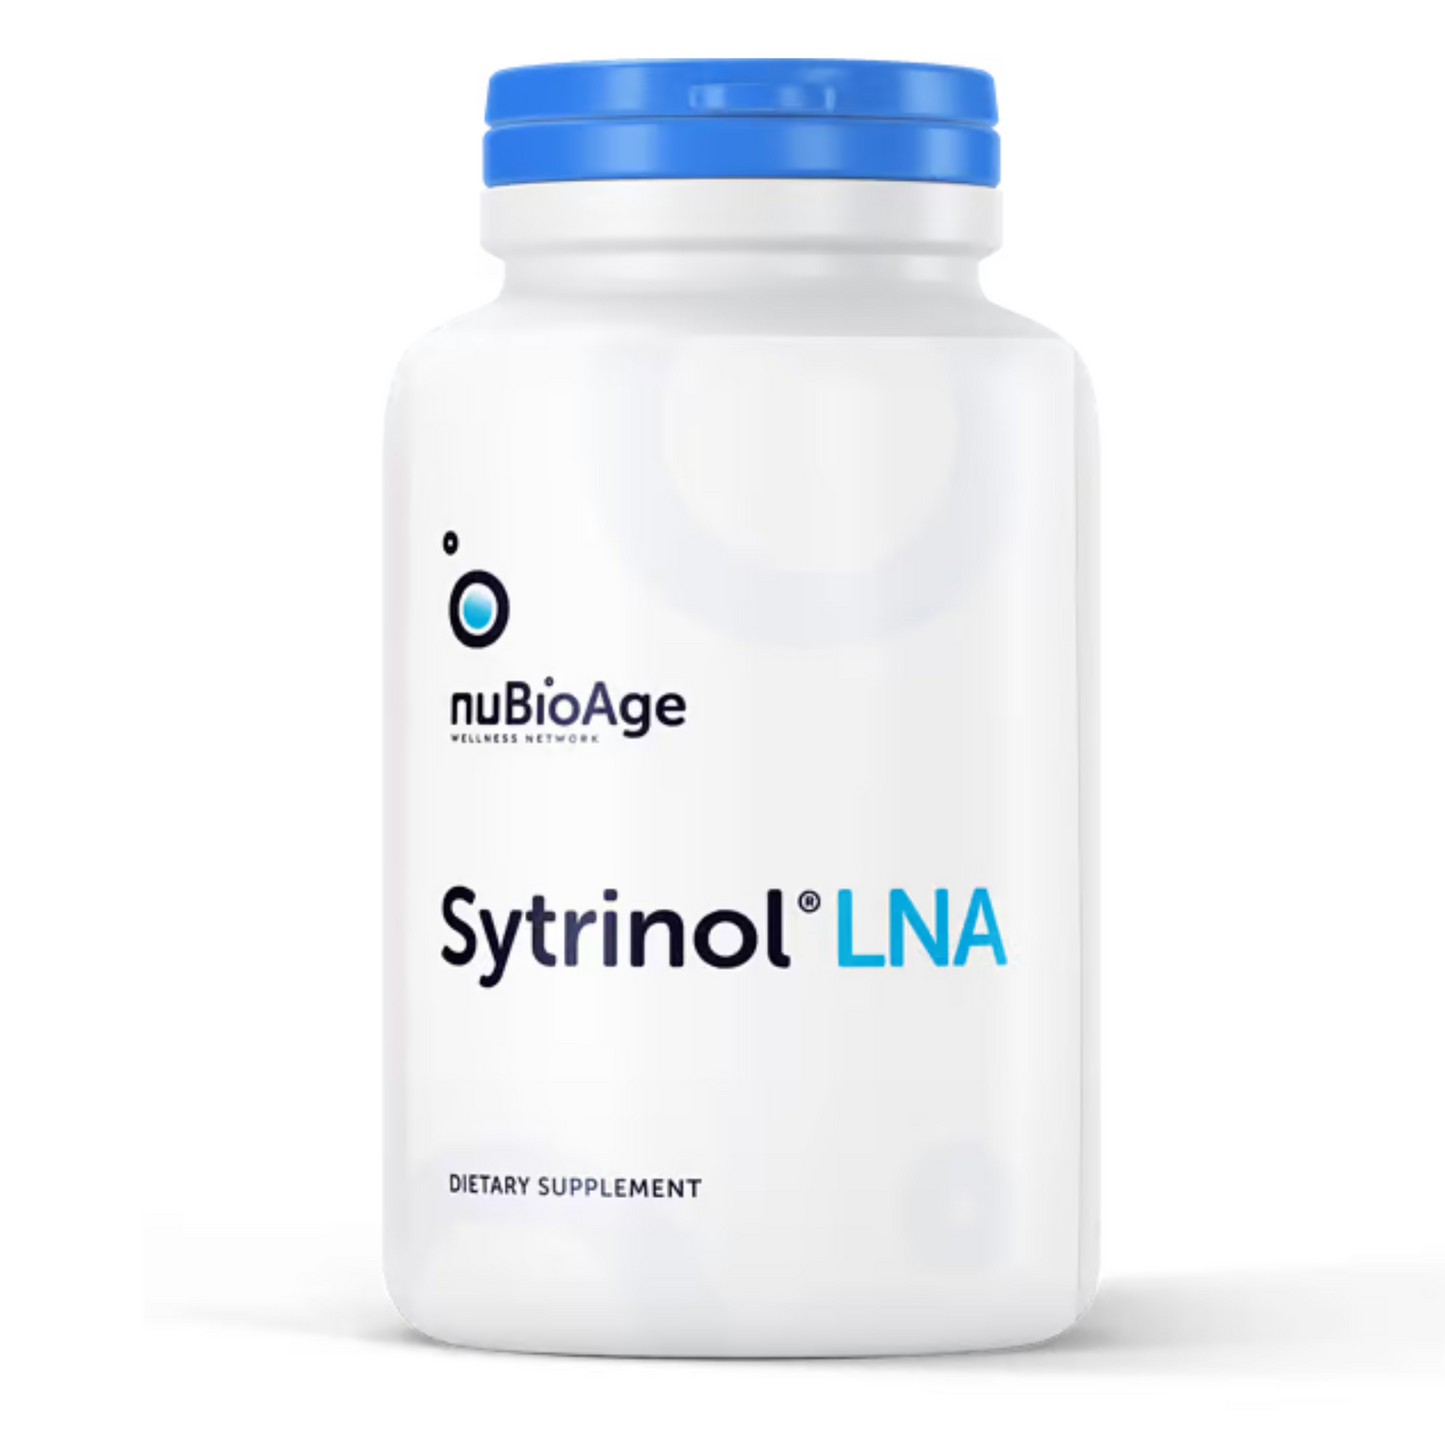 Sytrinol NuBioAge Supplement